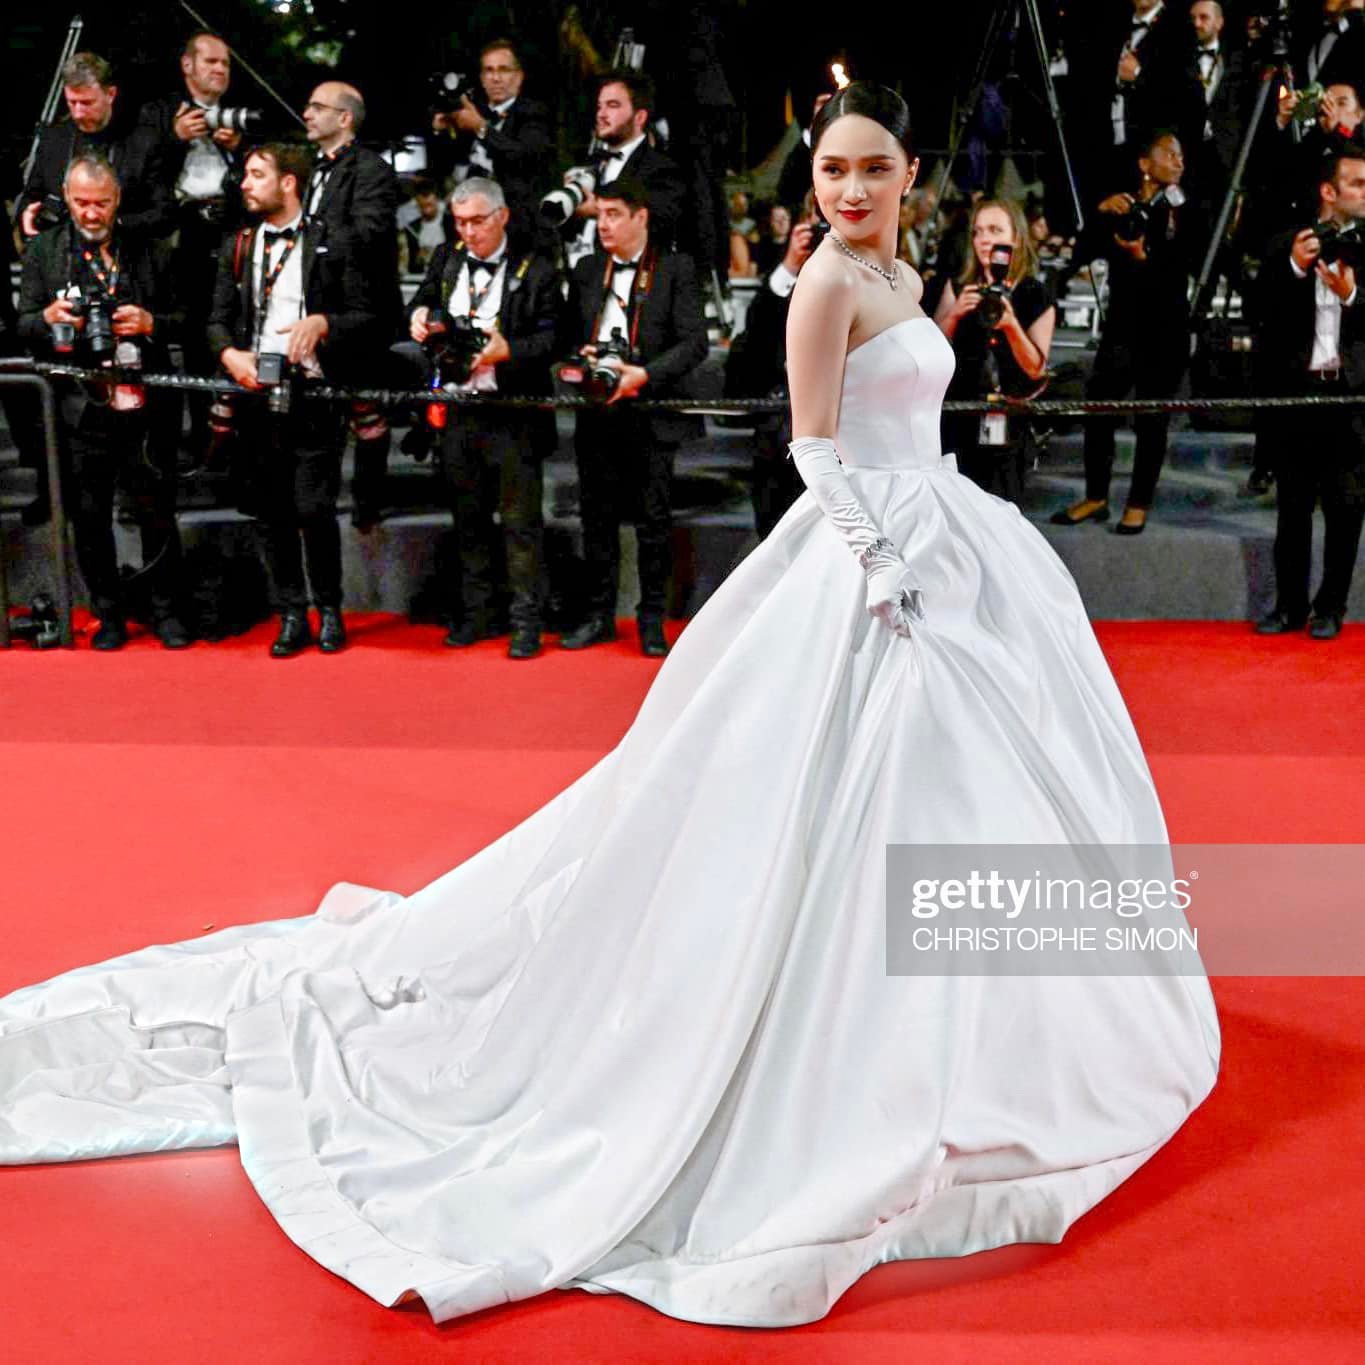 Hương Giang diện váy như cô dâu, bất ngờ xuất hiện trên thảm đỏ Cannes - Ảnh 4.